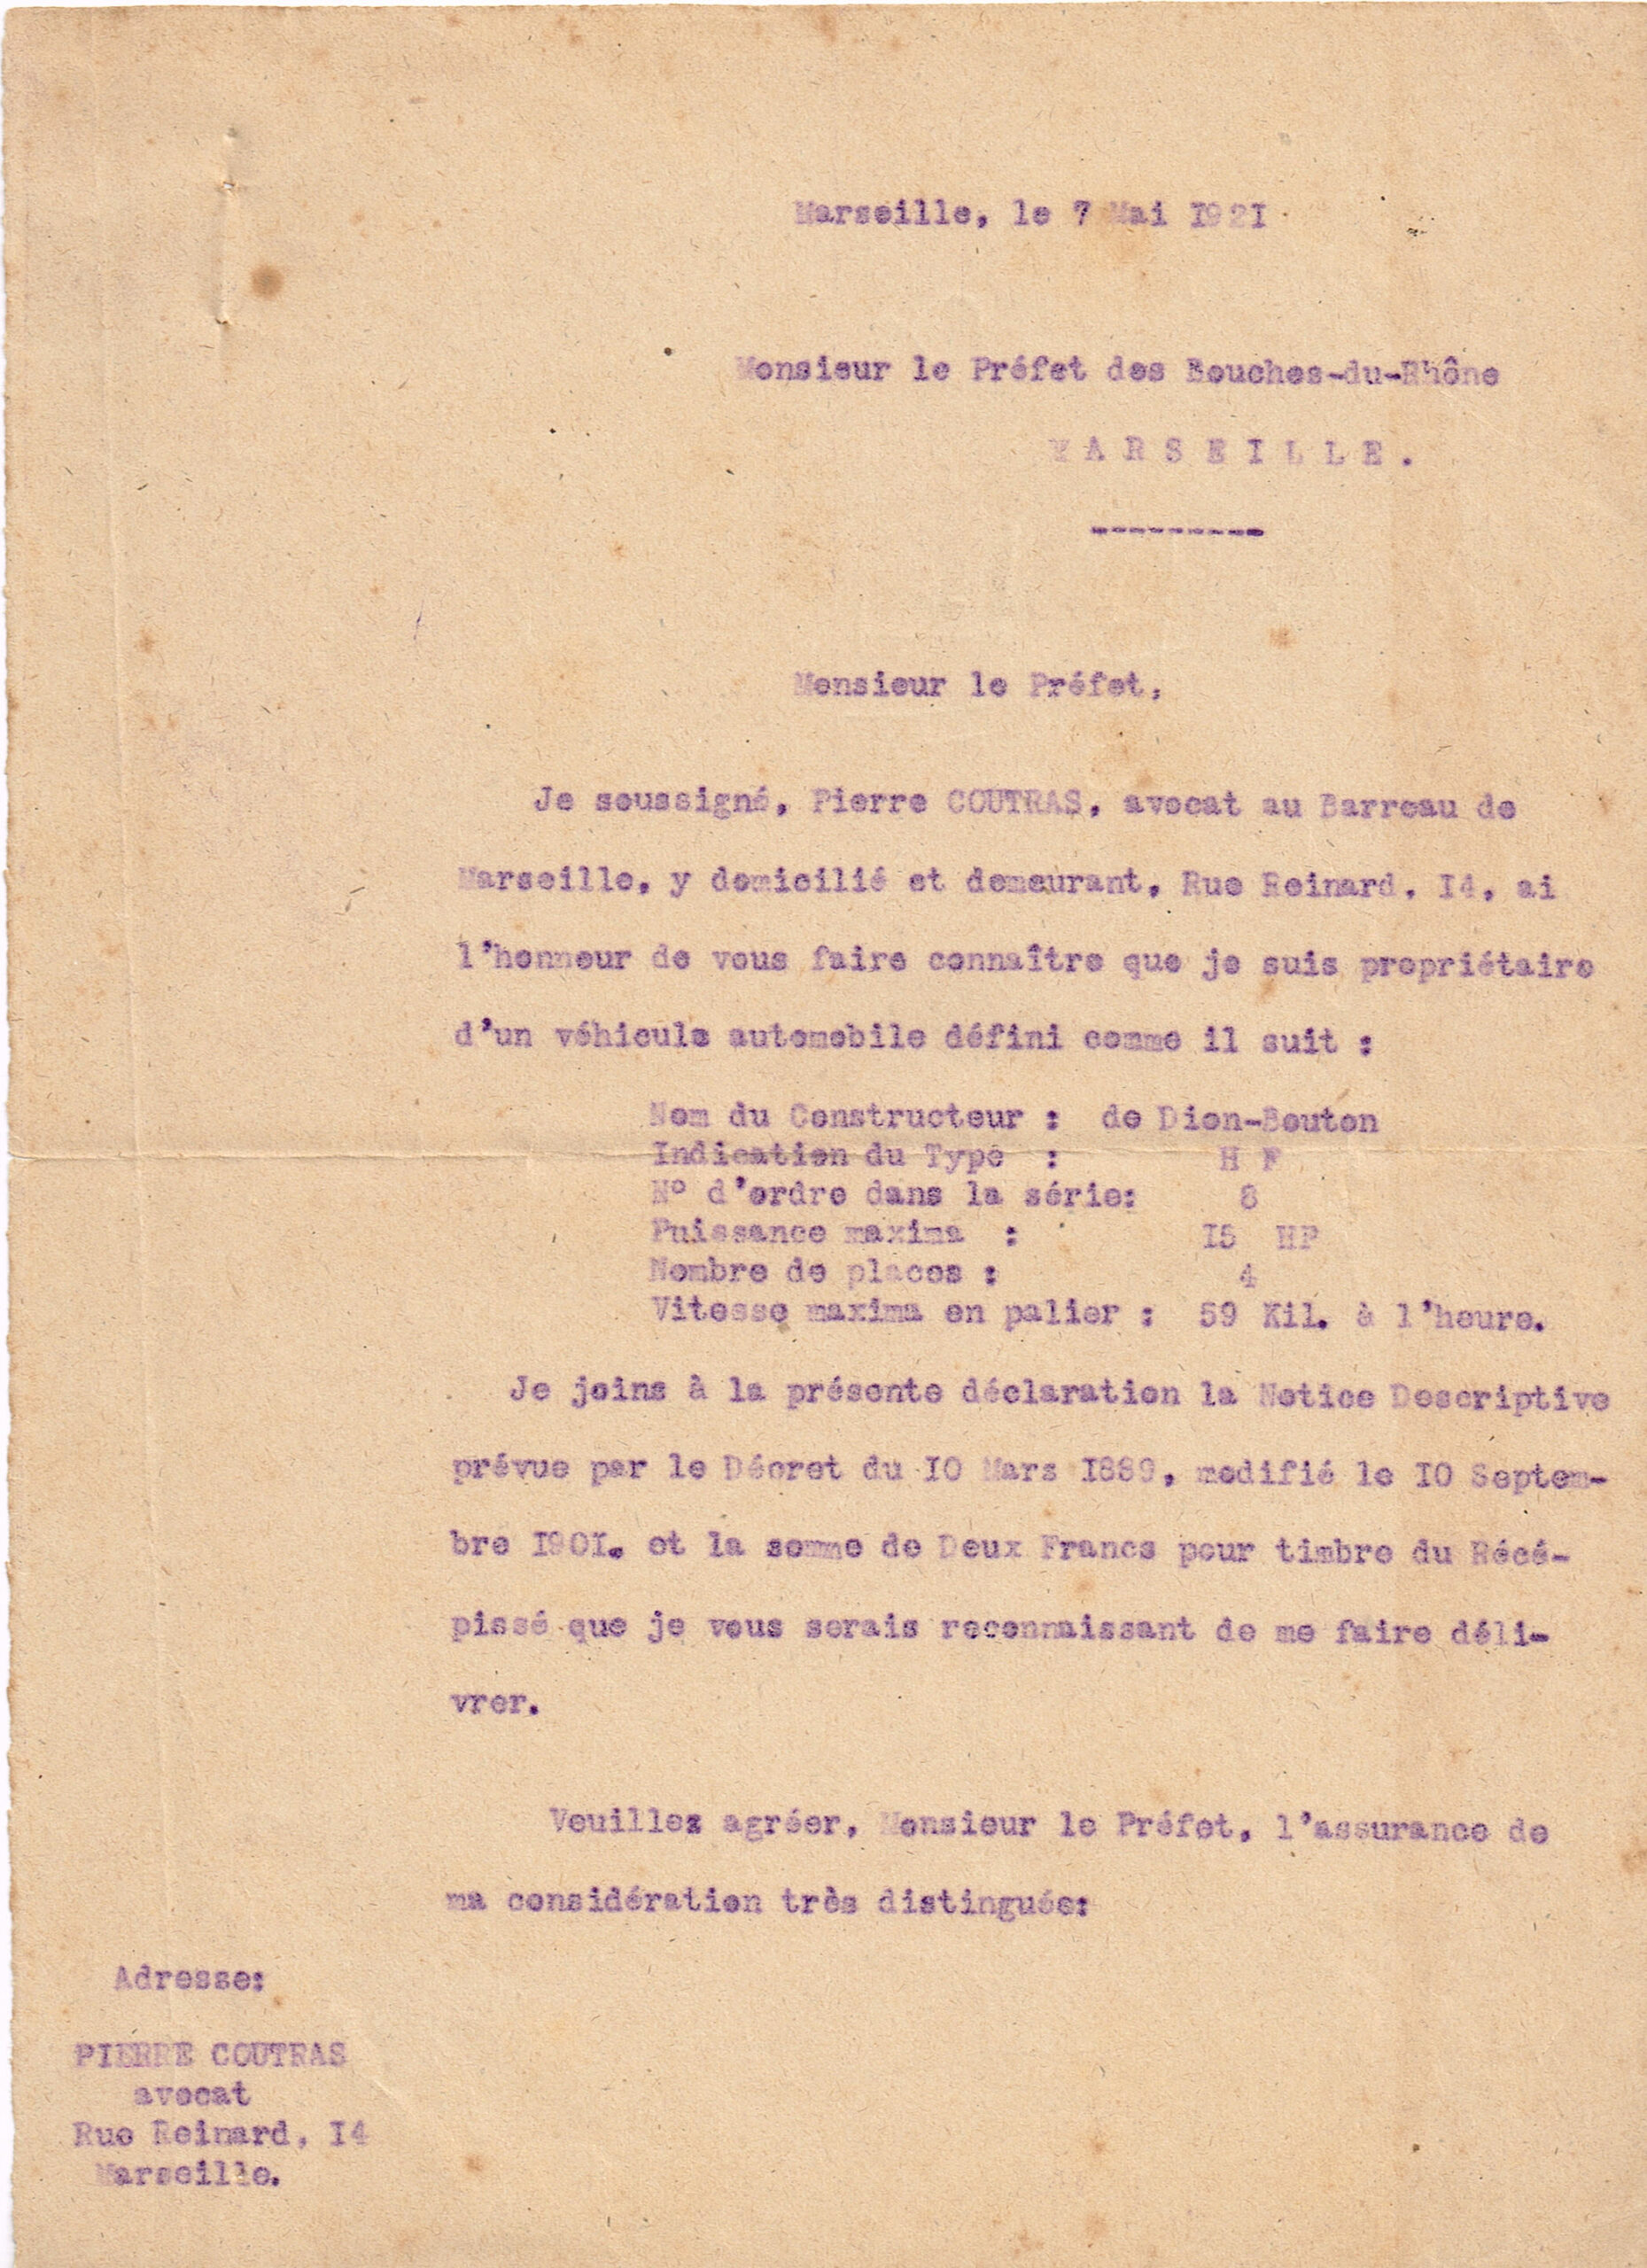 De Dion Bouton déclaration préfecture 7 mai 1921 1